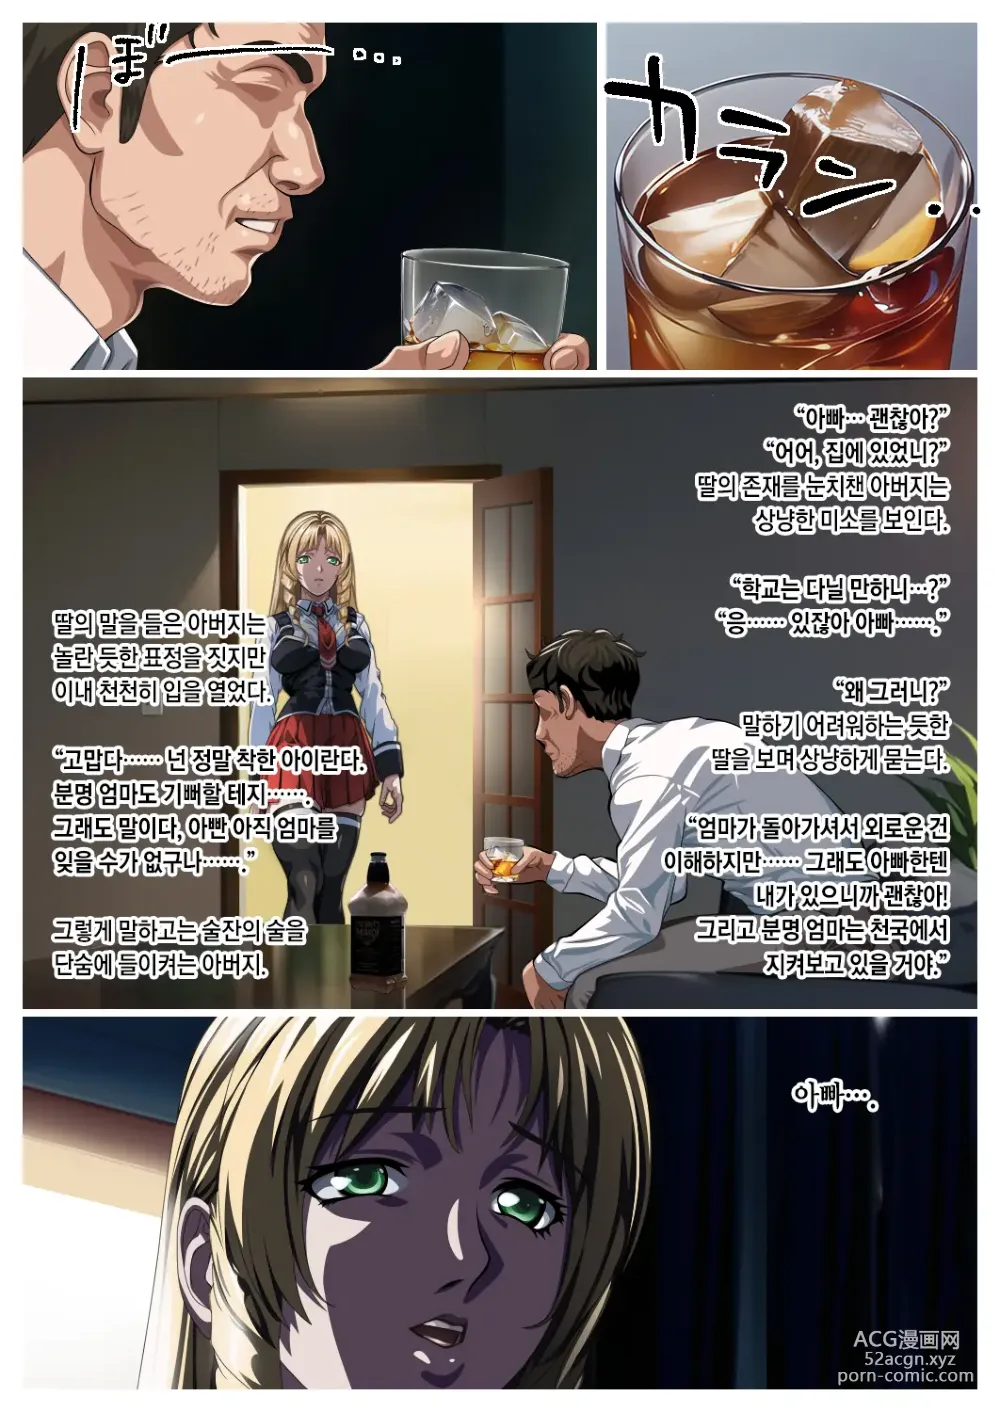 Page 2 of doujinshi 아버지와 딸의 금단의 관계